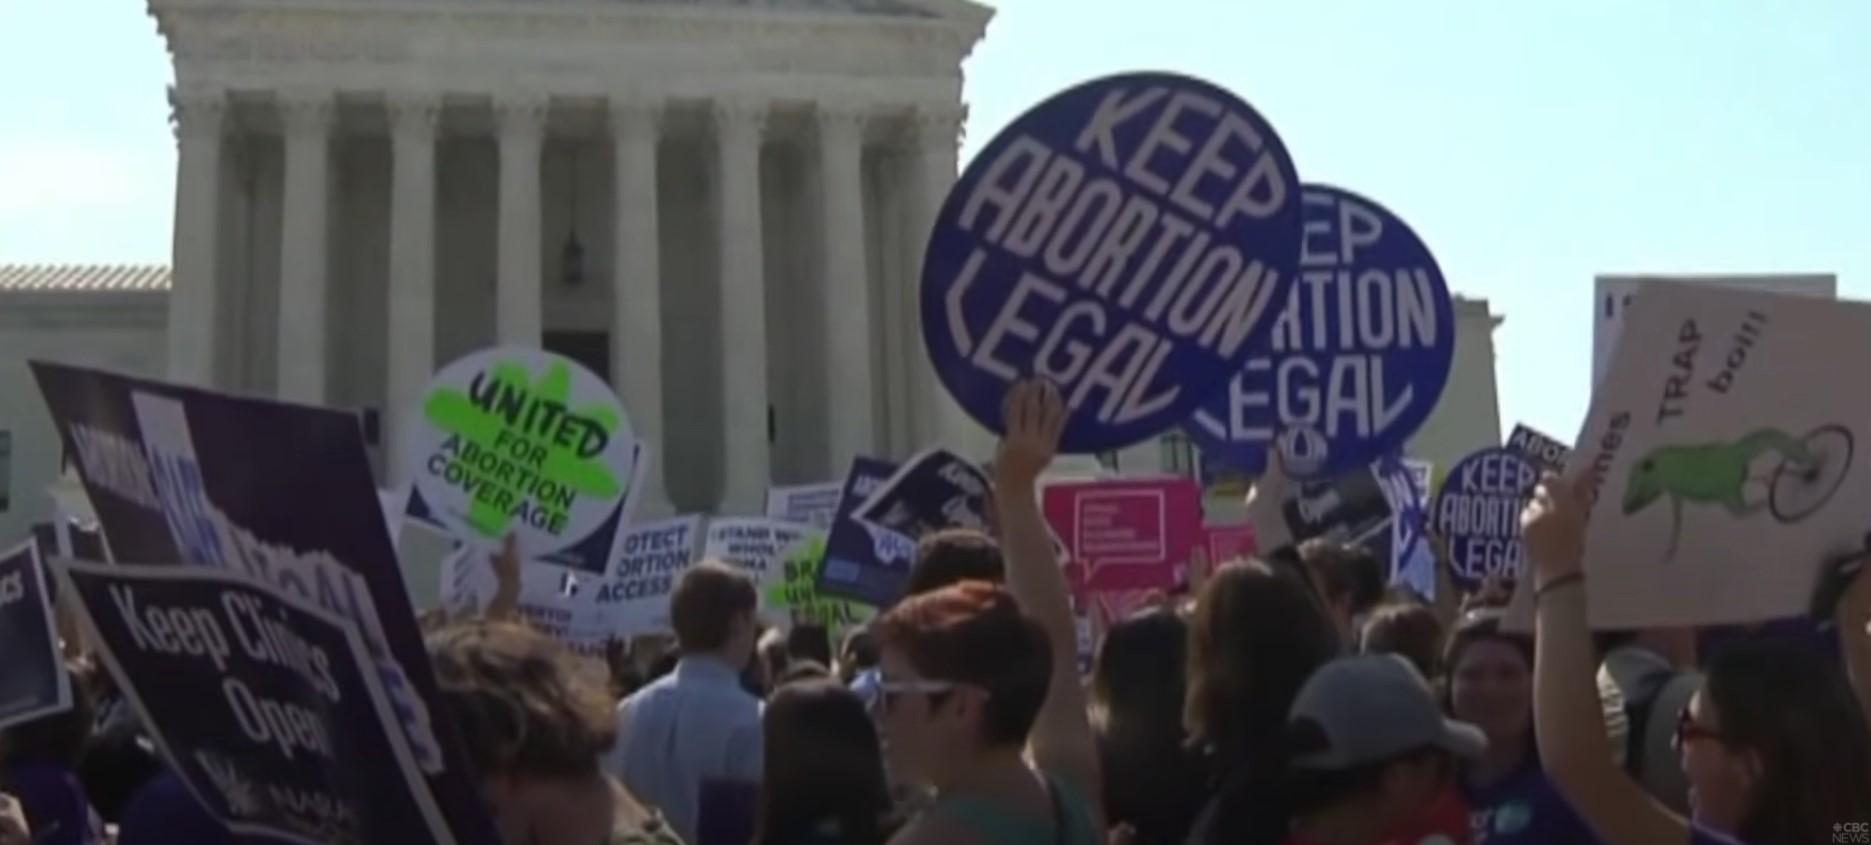 Pensilvanija planira uvođenje najrigoroznijih zakona o abortusu